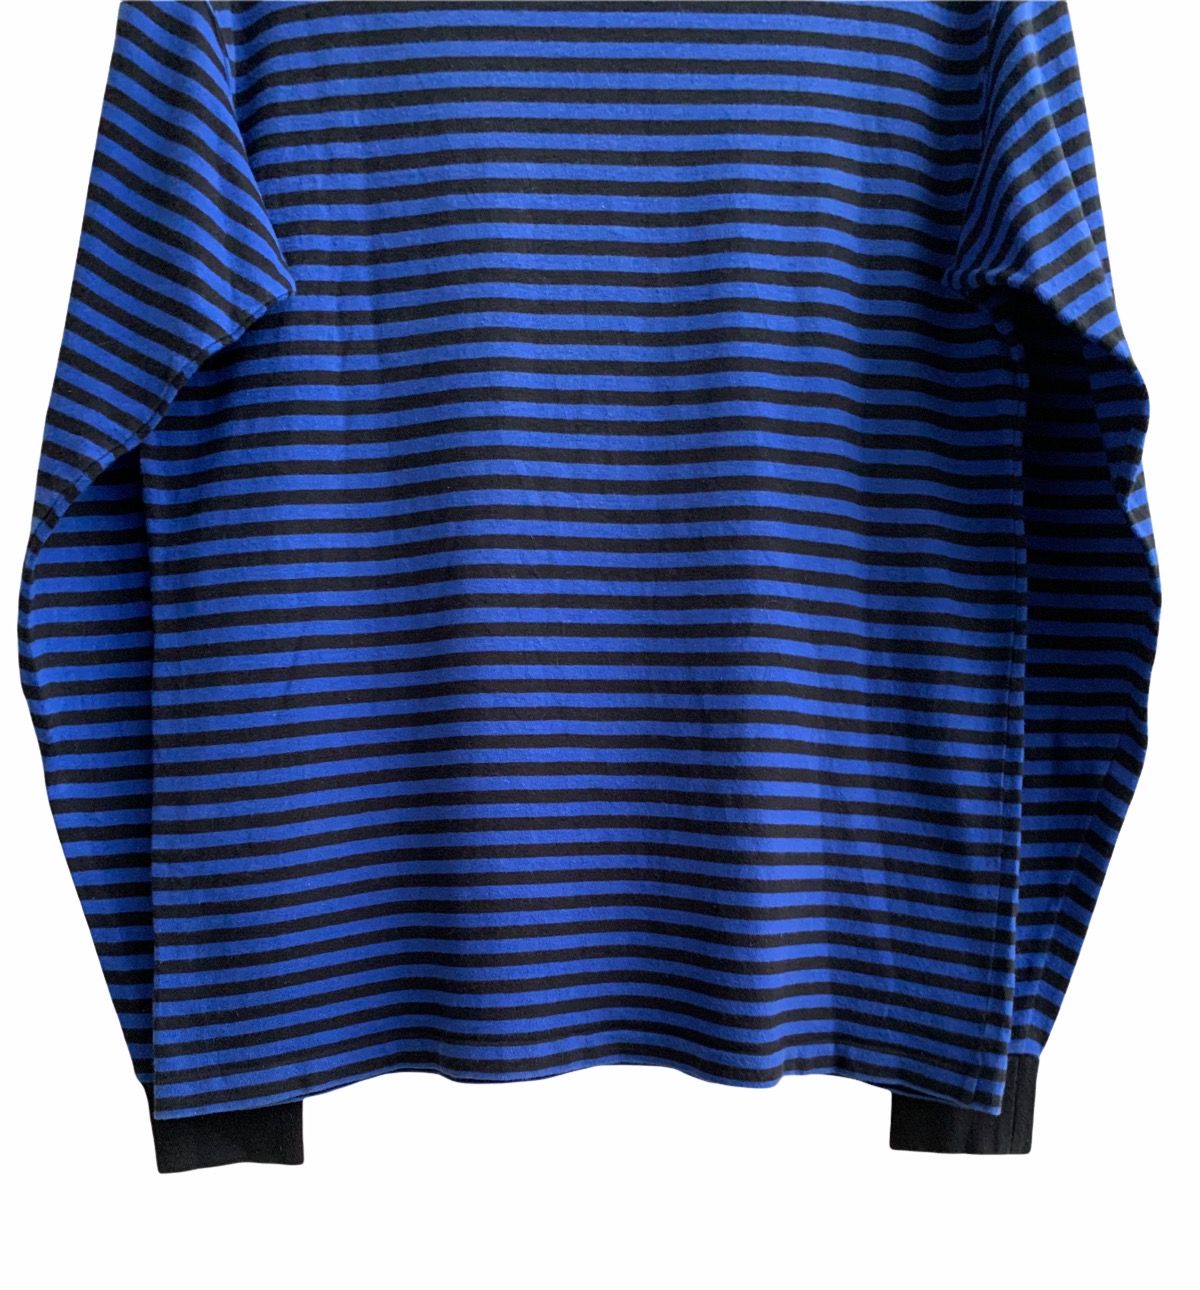 Goodenough Vinateg Good Enough Blue Striped Long Sleeve T-shirts Size US L / EU 52-54 / 3 - 6 Thumbnail